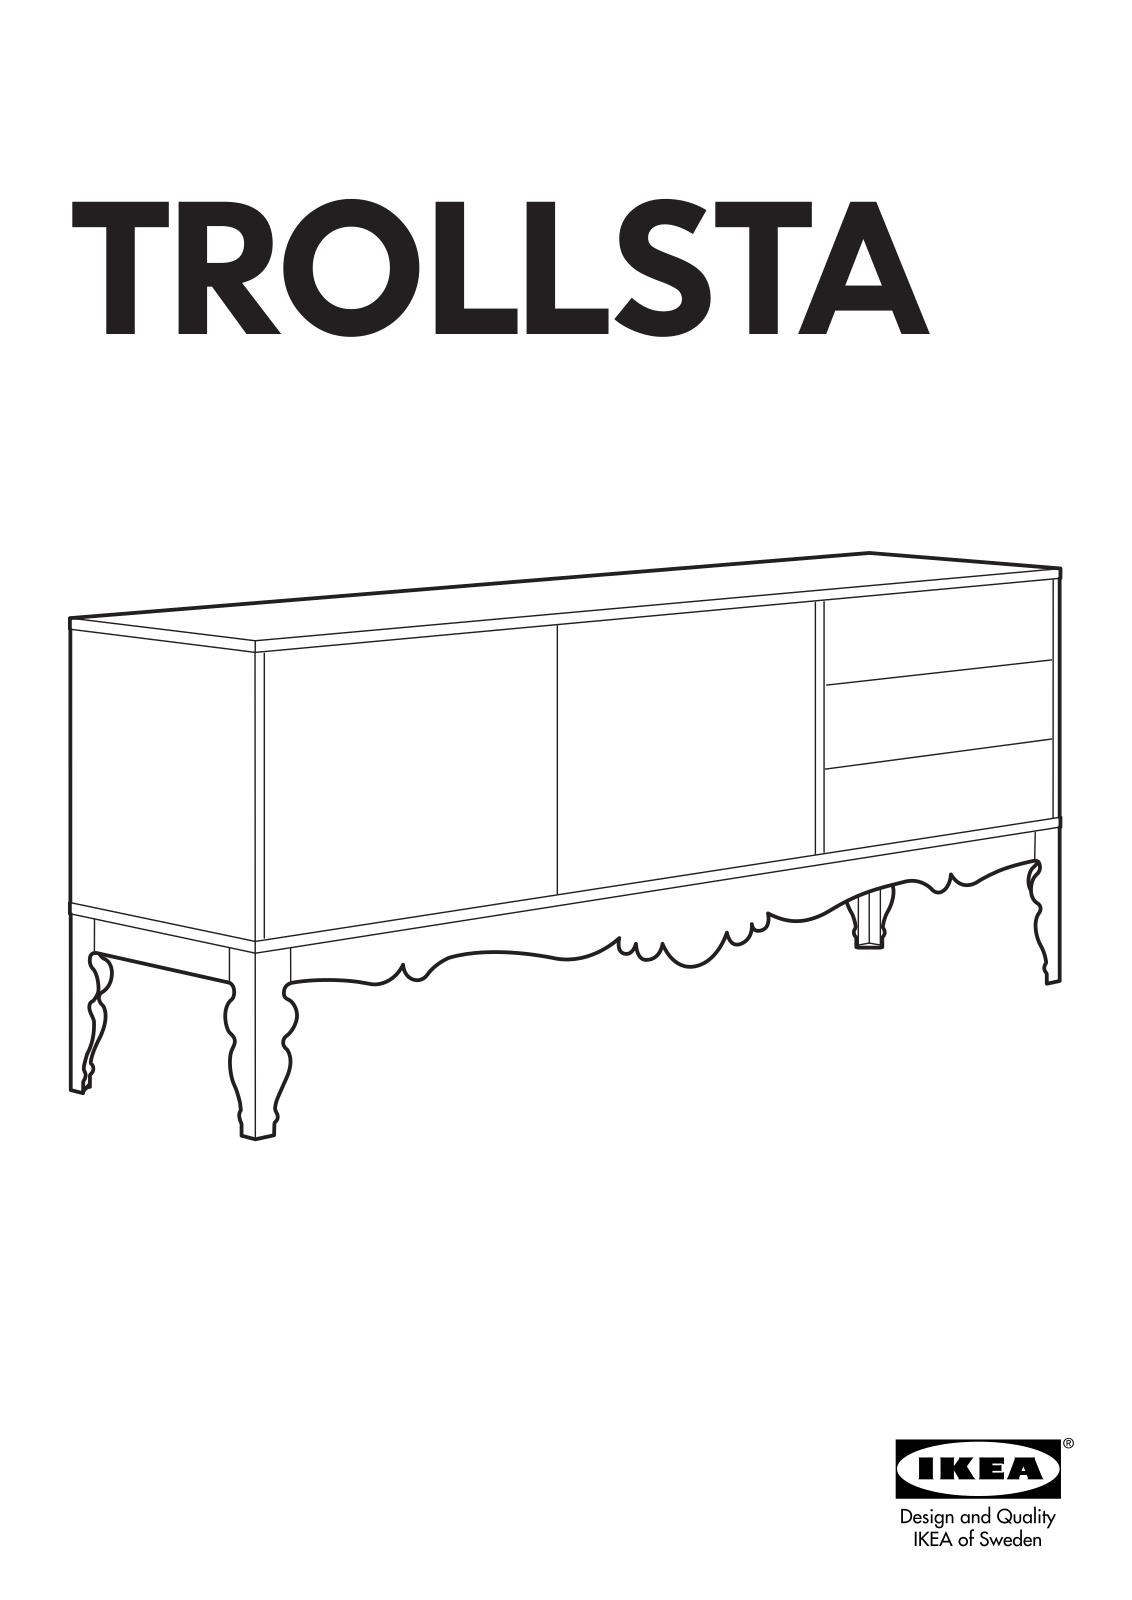 IKEA TROLLSTA SIDEBOARD Assembly Instruction